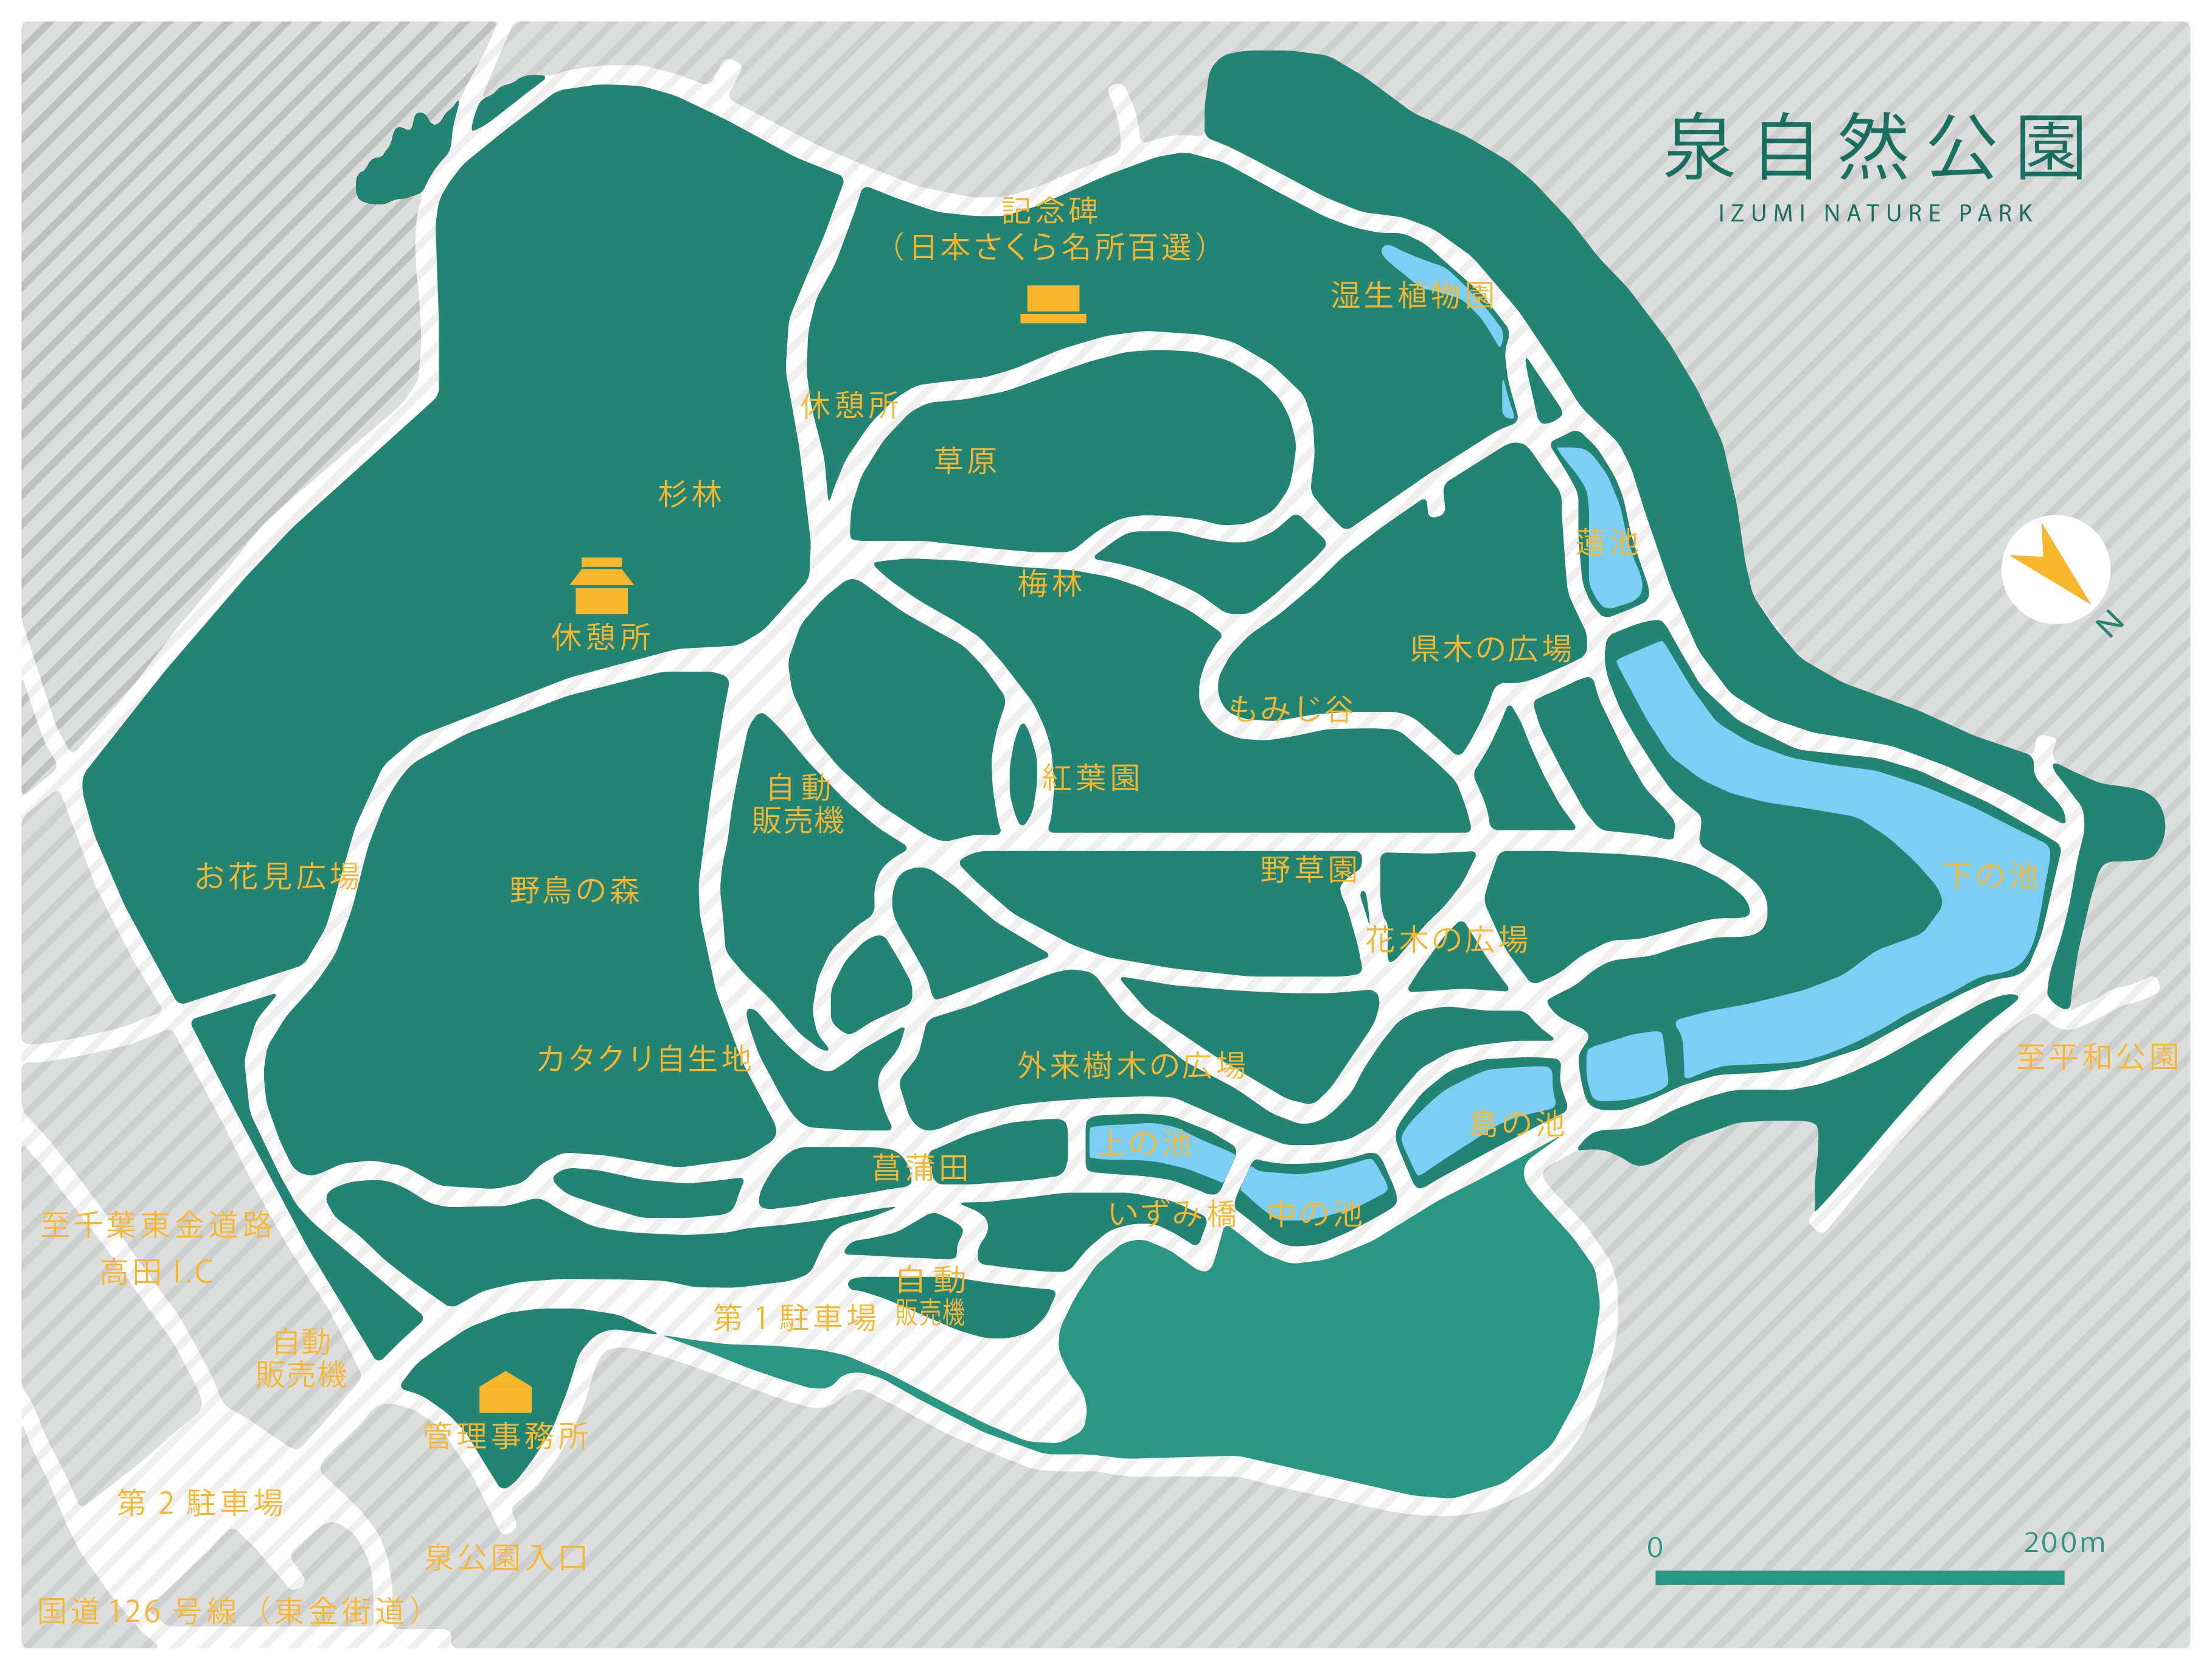 泉自然公園の園内詳細地図